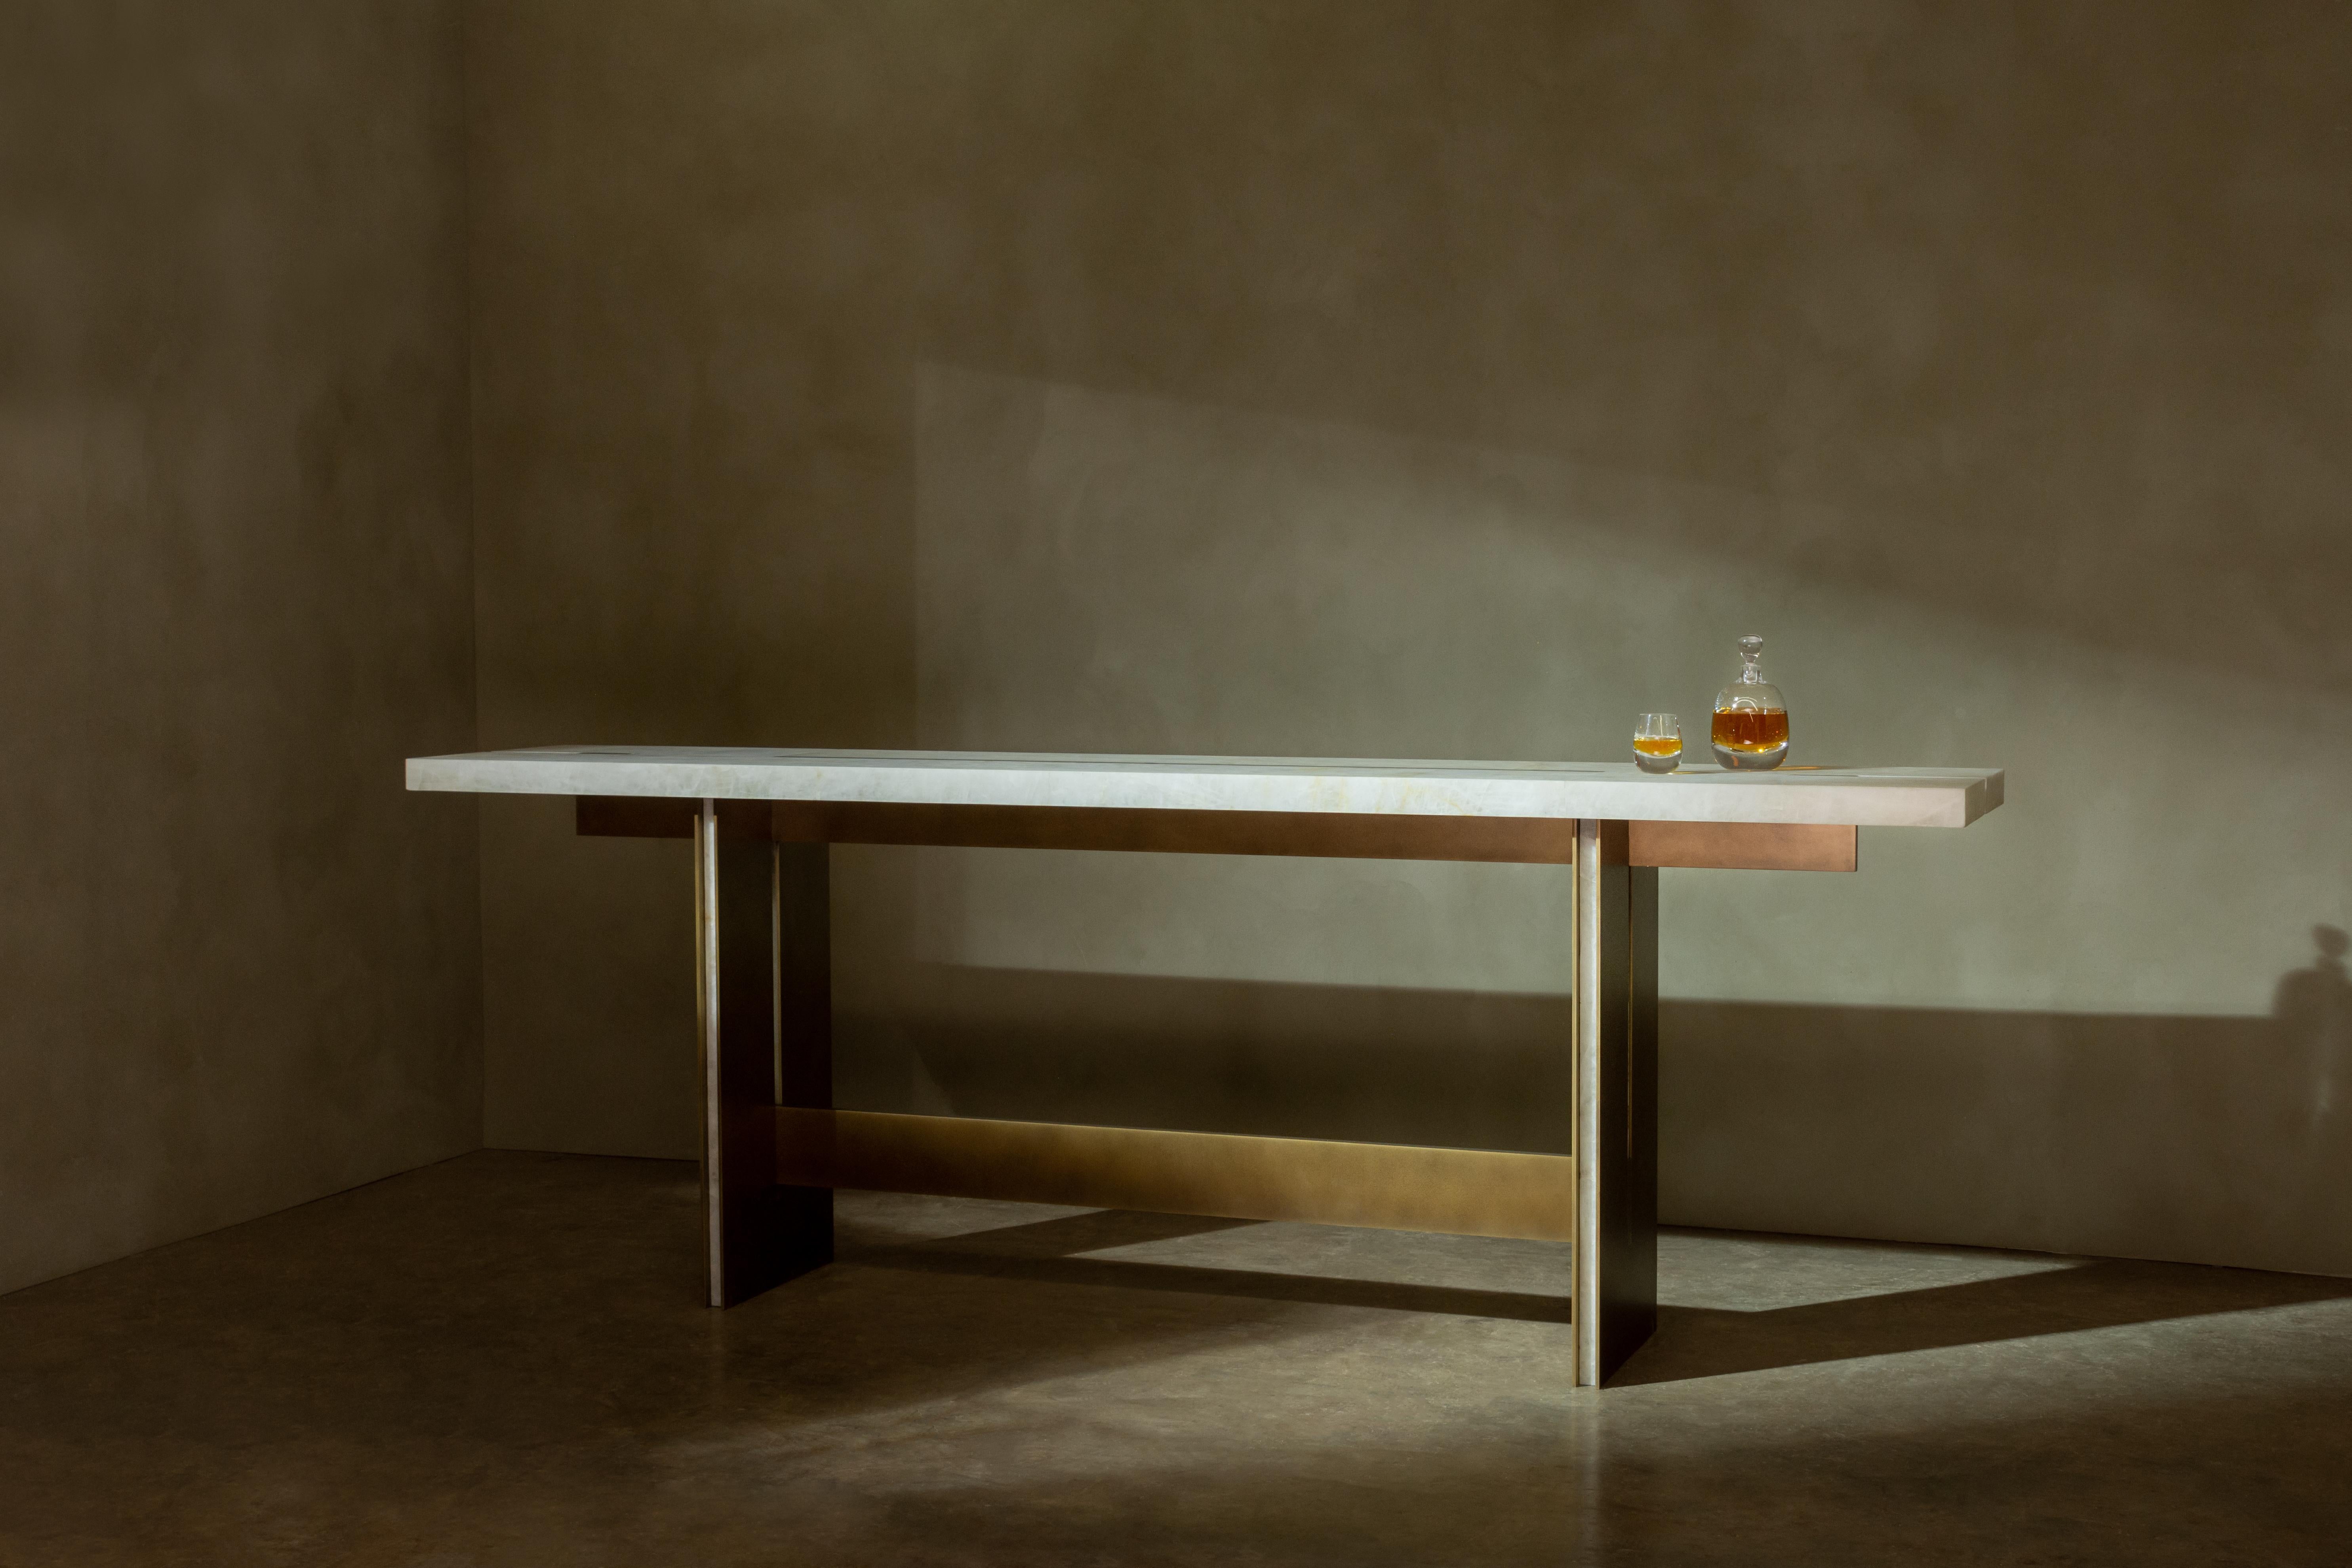 Barhoher Tisch, der aus sich kreuzenden Stein- und Metallelementen zusammengesetzt ist, die klare, geometrische Kompositionen bilden. Die Details der Stein- und Metalleinlagen sowie die präzisen Ausschnitte veredeln das minimalistische Design.